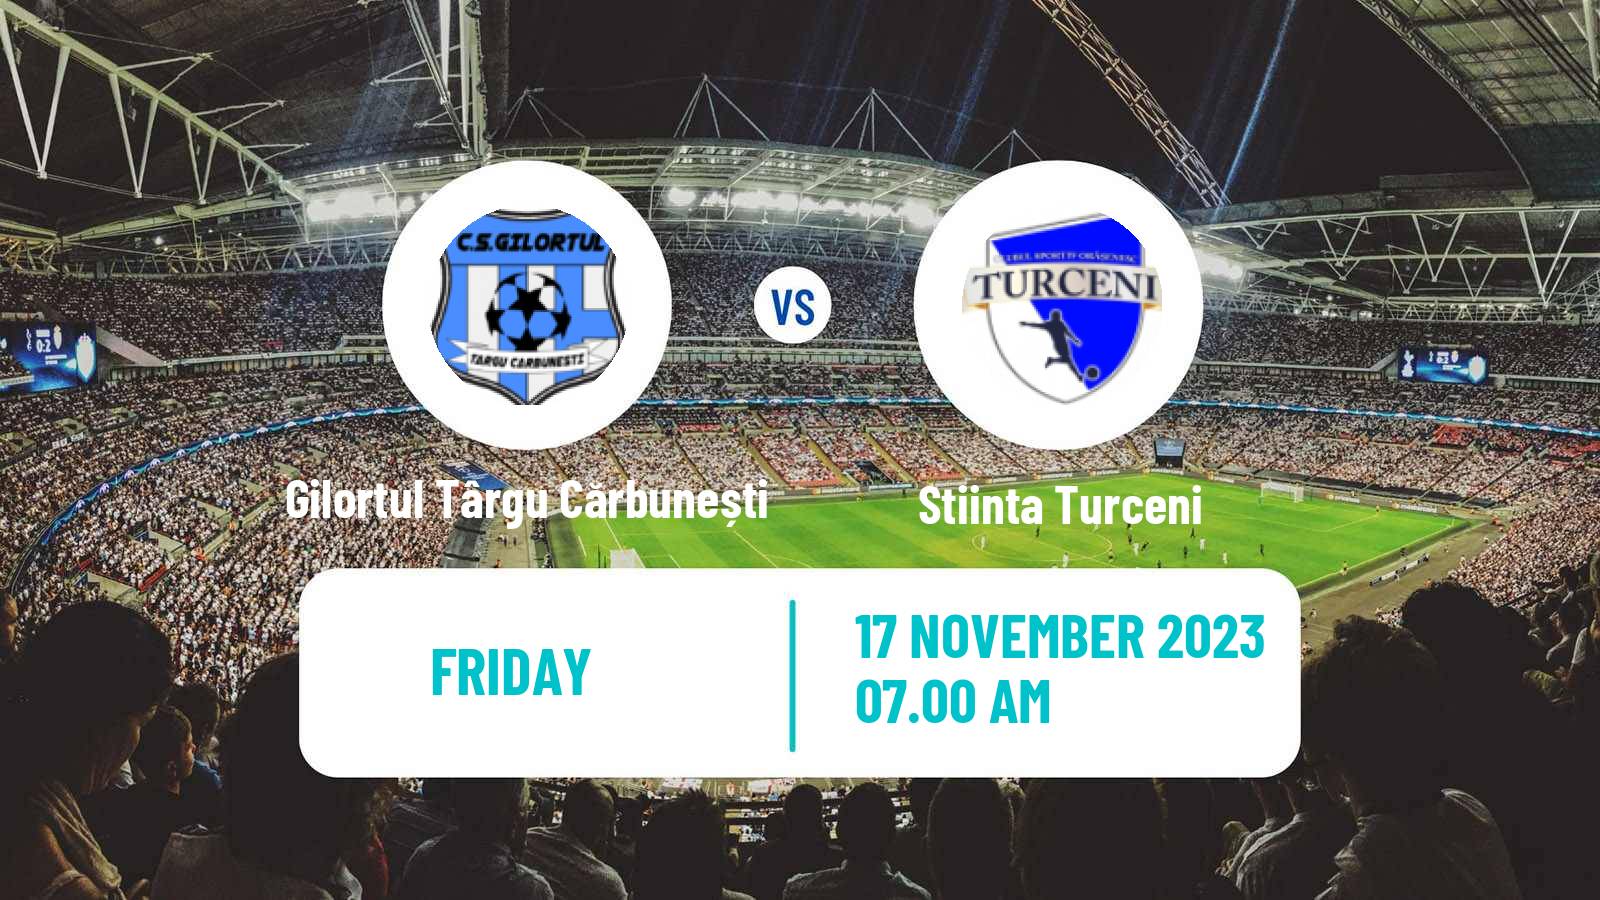 Soccer Romanian Liga 3 - Seria 7 Gilortul Târgu Cărbunești - Stiinta Turceni